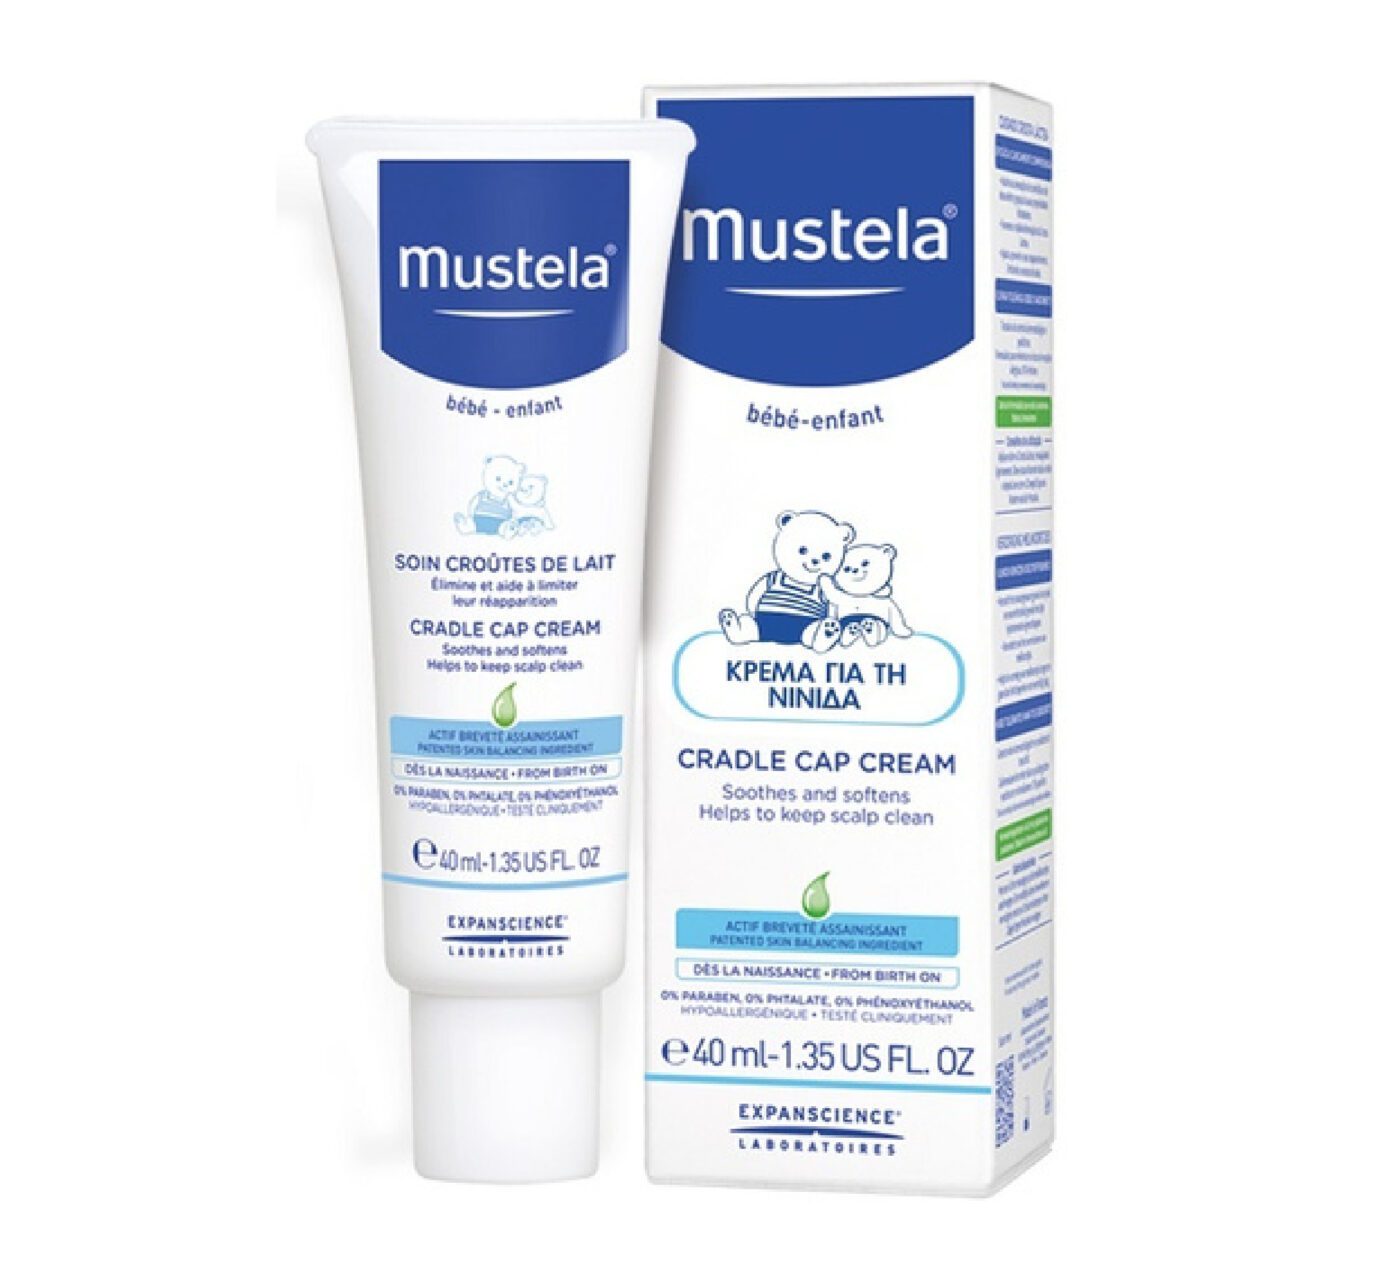 Mustela- Cradle Cap Cream